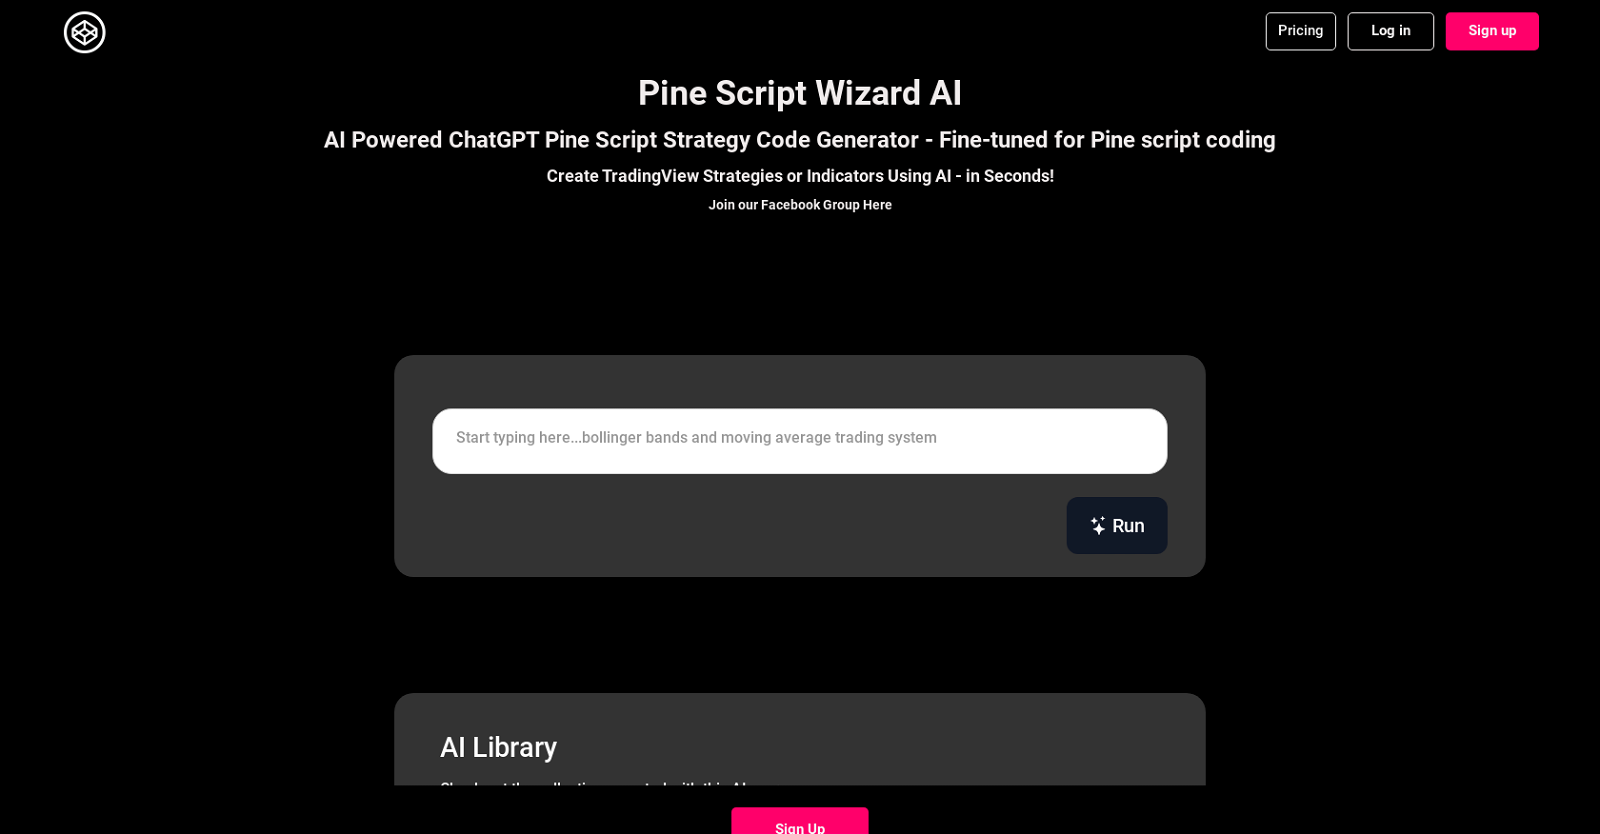 PineScriptWizard website